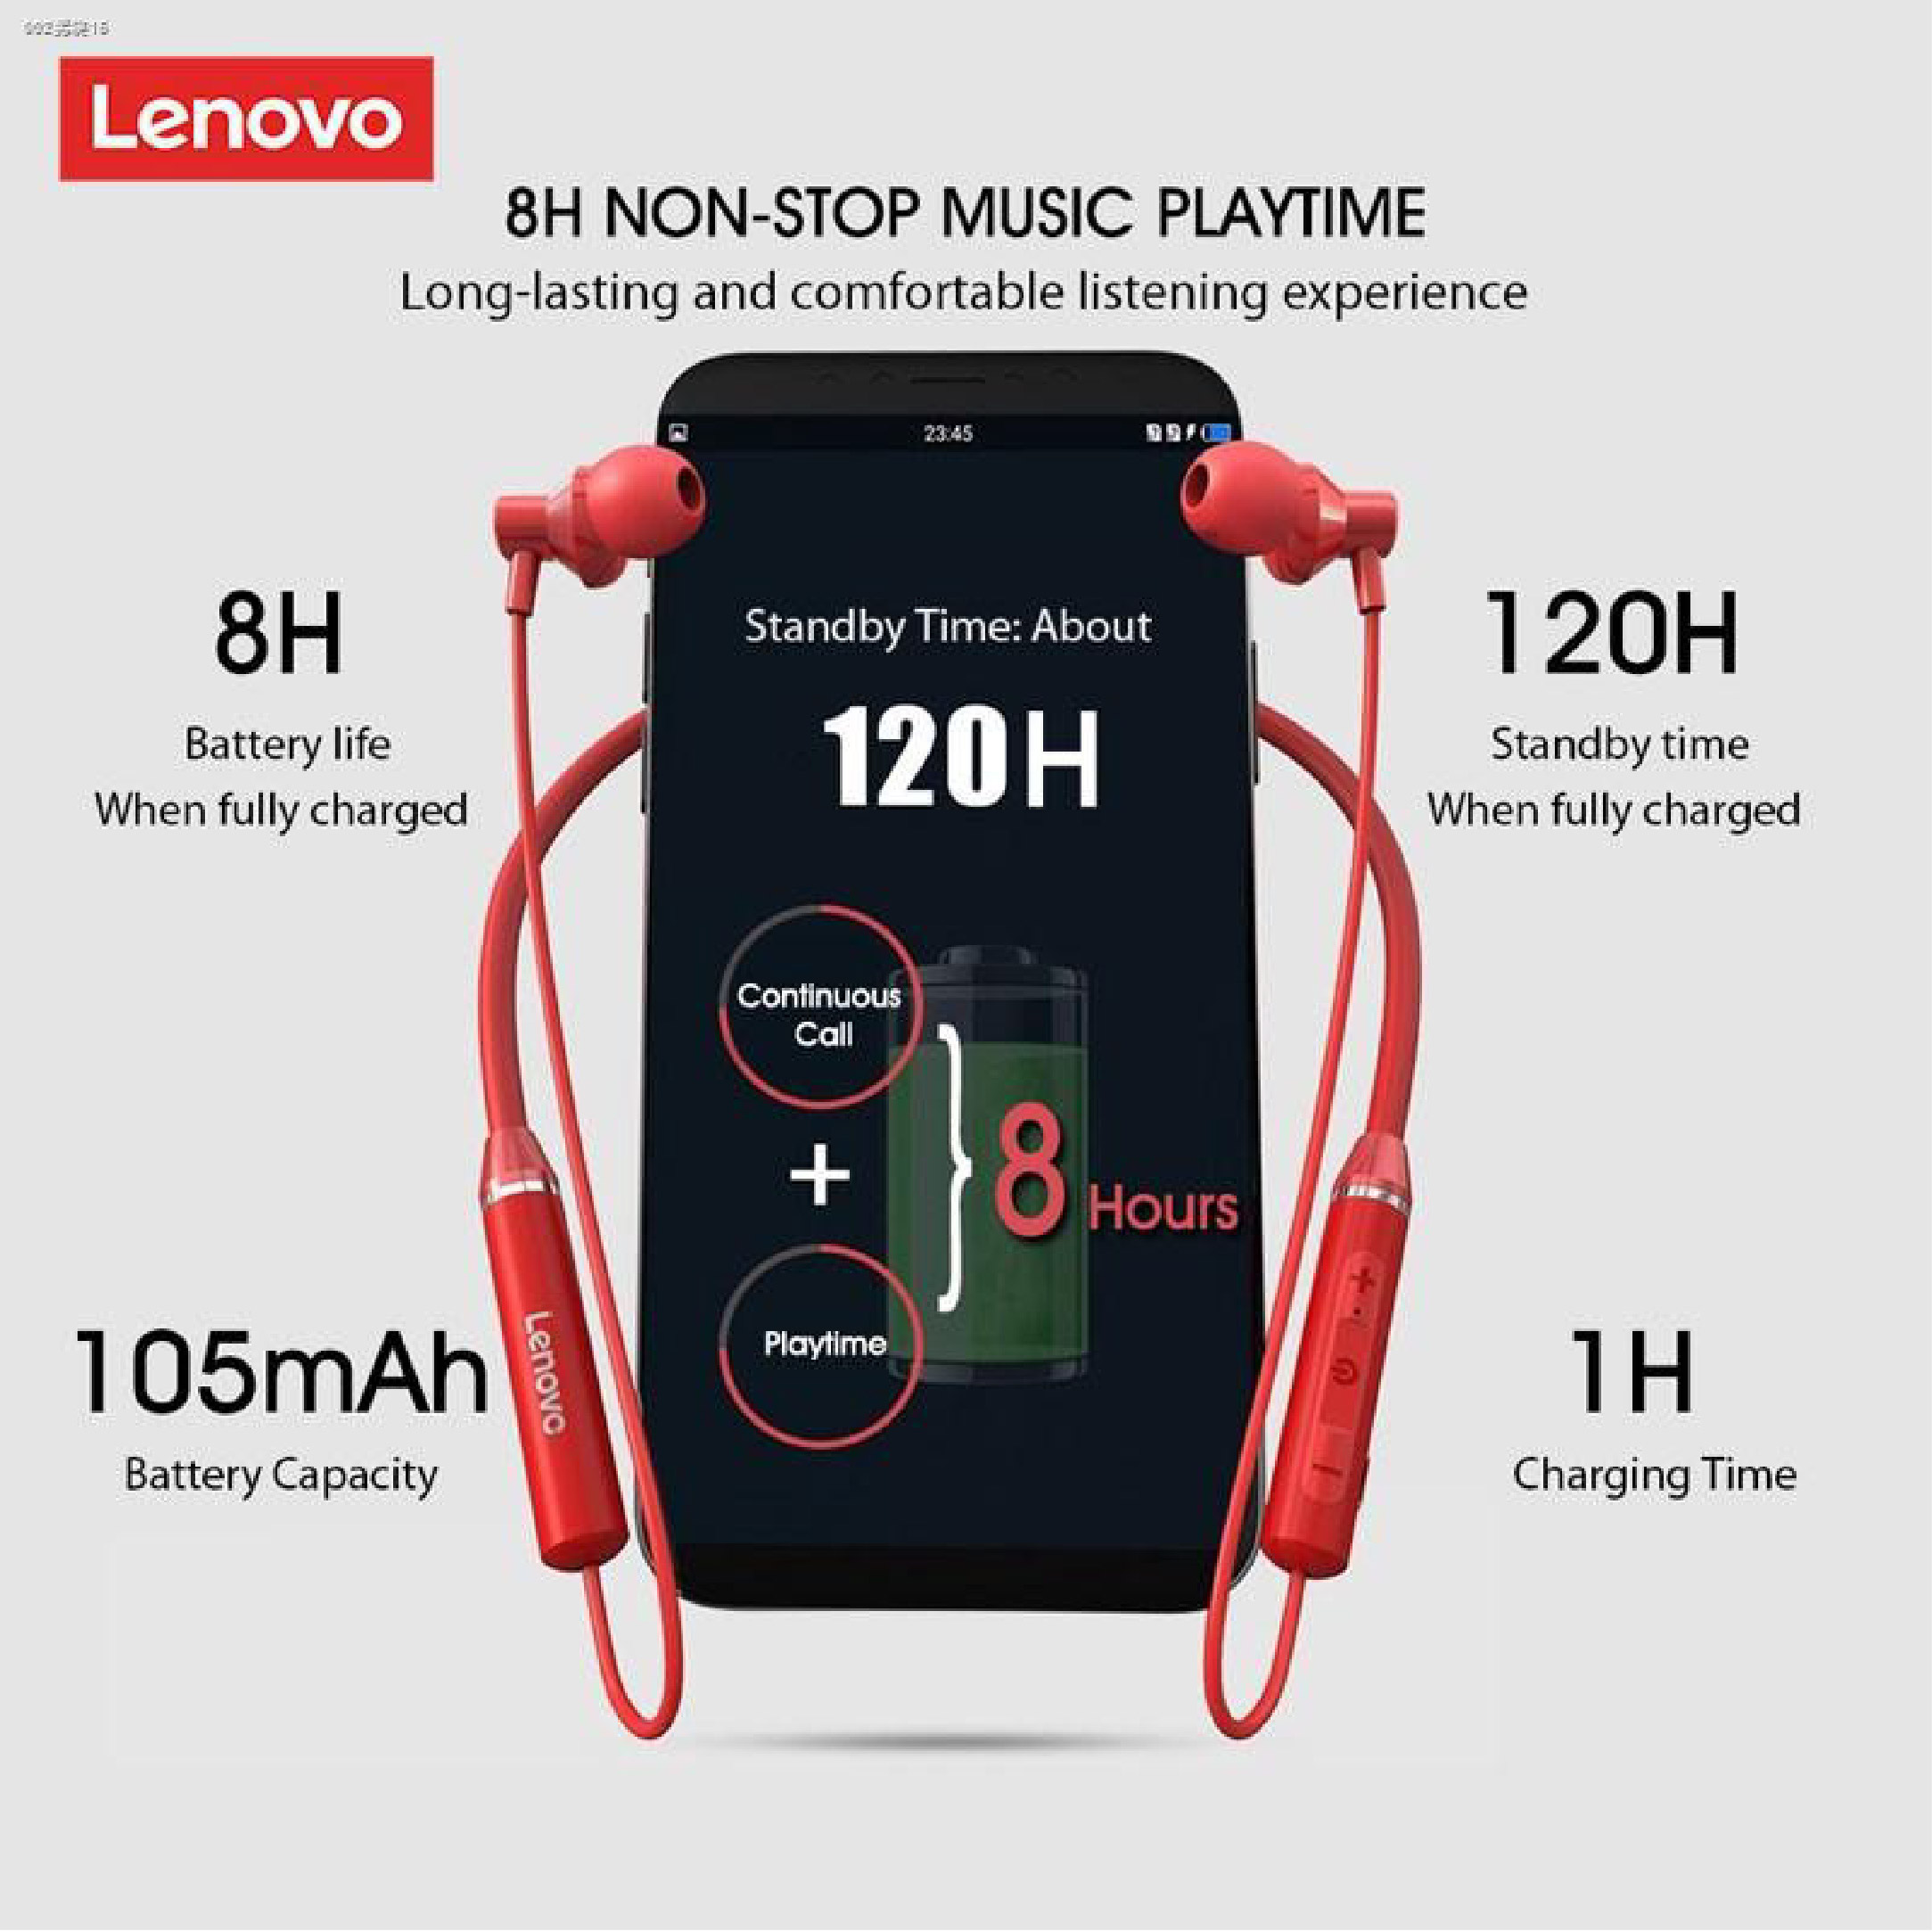 ภาพที่ให้รายละเอียดเกี่ยวกับ Lenovo thinkplus live pods XE05 หูฟัง บลูทูธ Blth แบบ In-ear เหมาะสำหรับ ใส่ออกกำลังกาย ของแท้ 100%